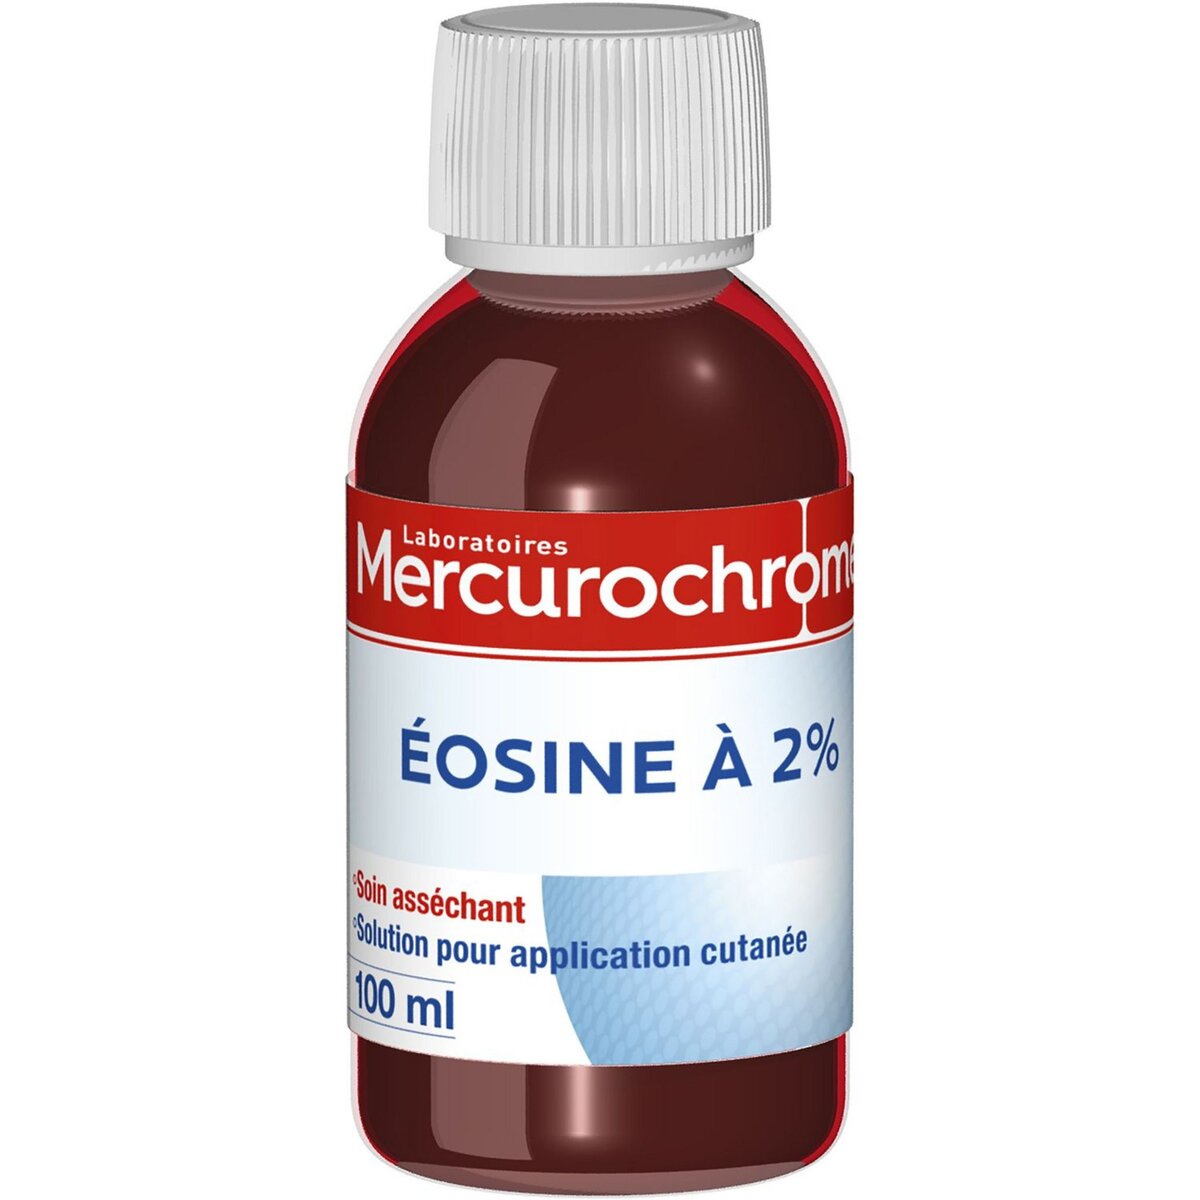 MERCUROCHROME Mercurochrome soution d'éosine à 2% -100ml